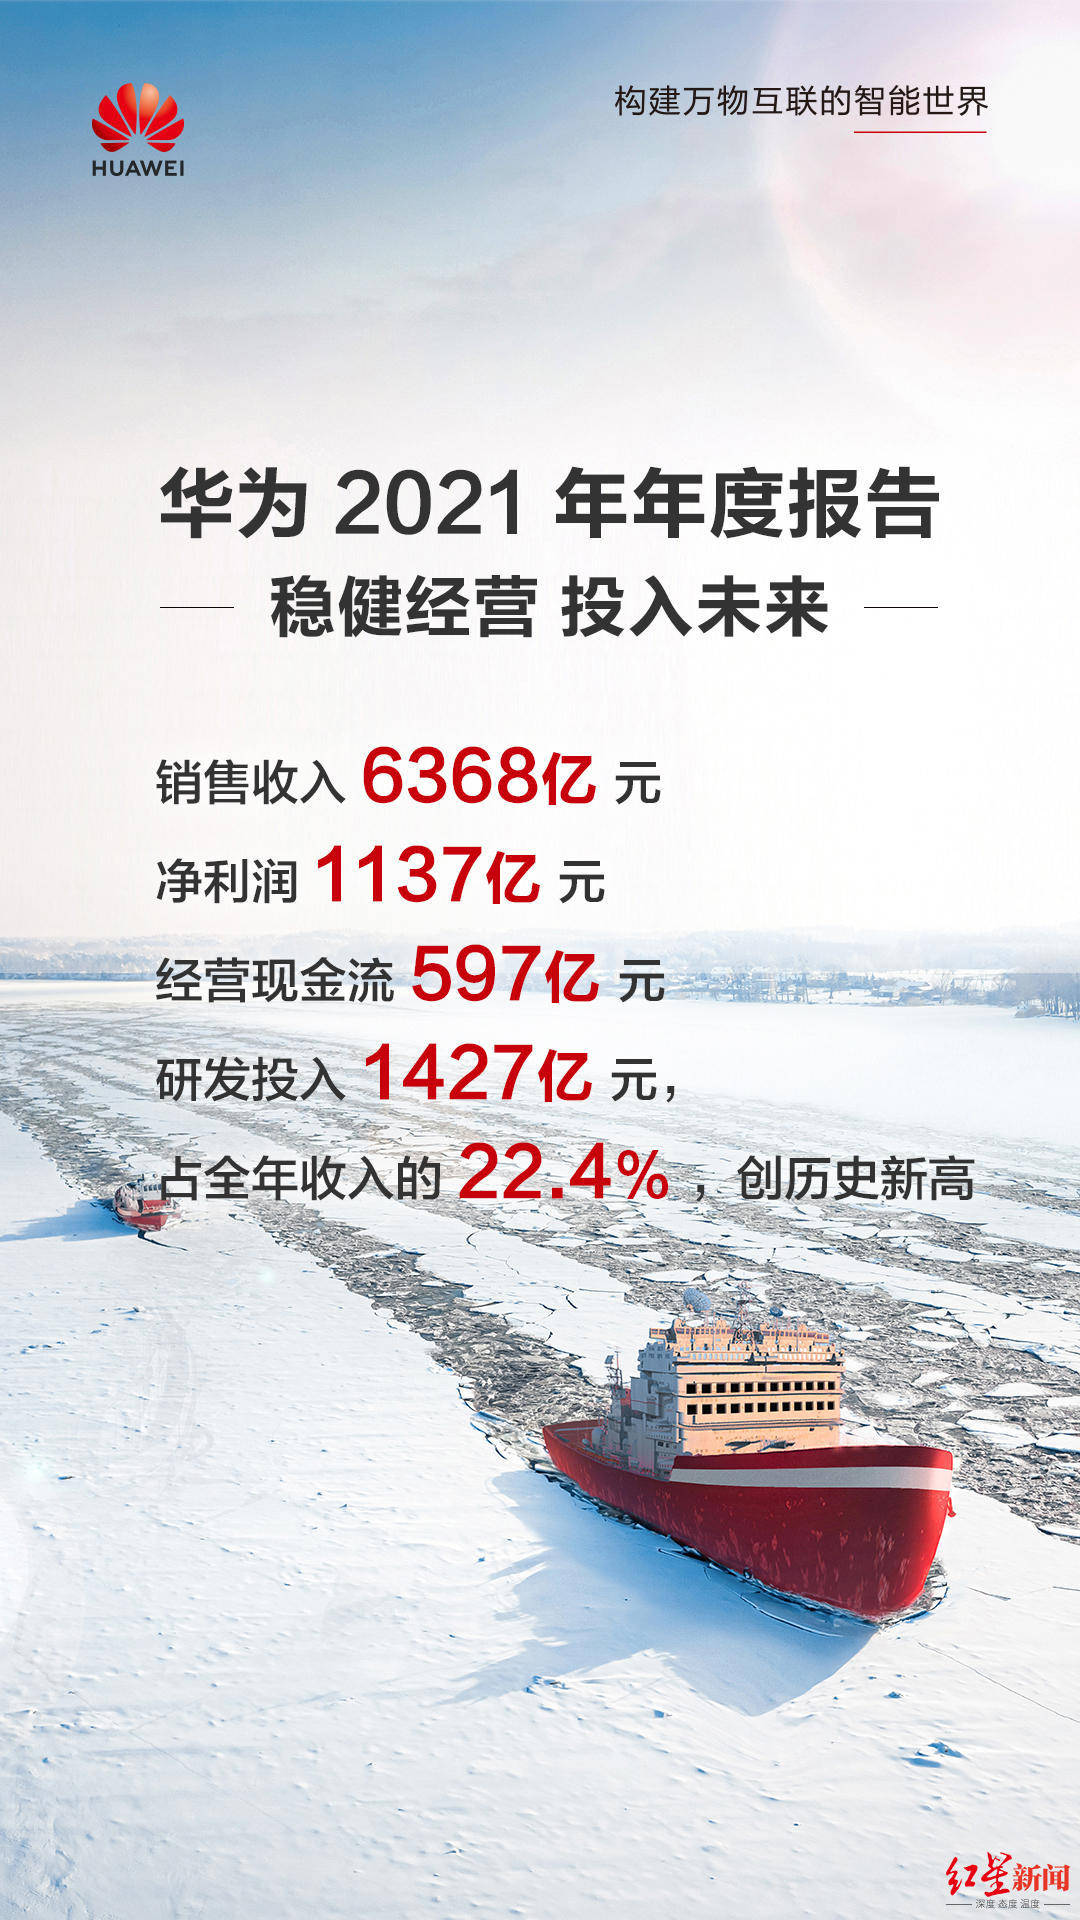 华为2021年报研发投入1427亿元十年累计超八千亿